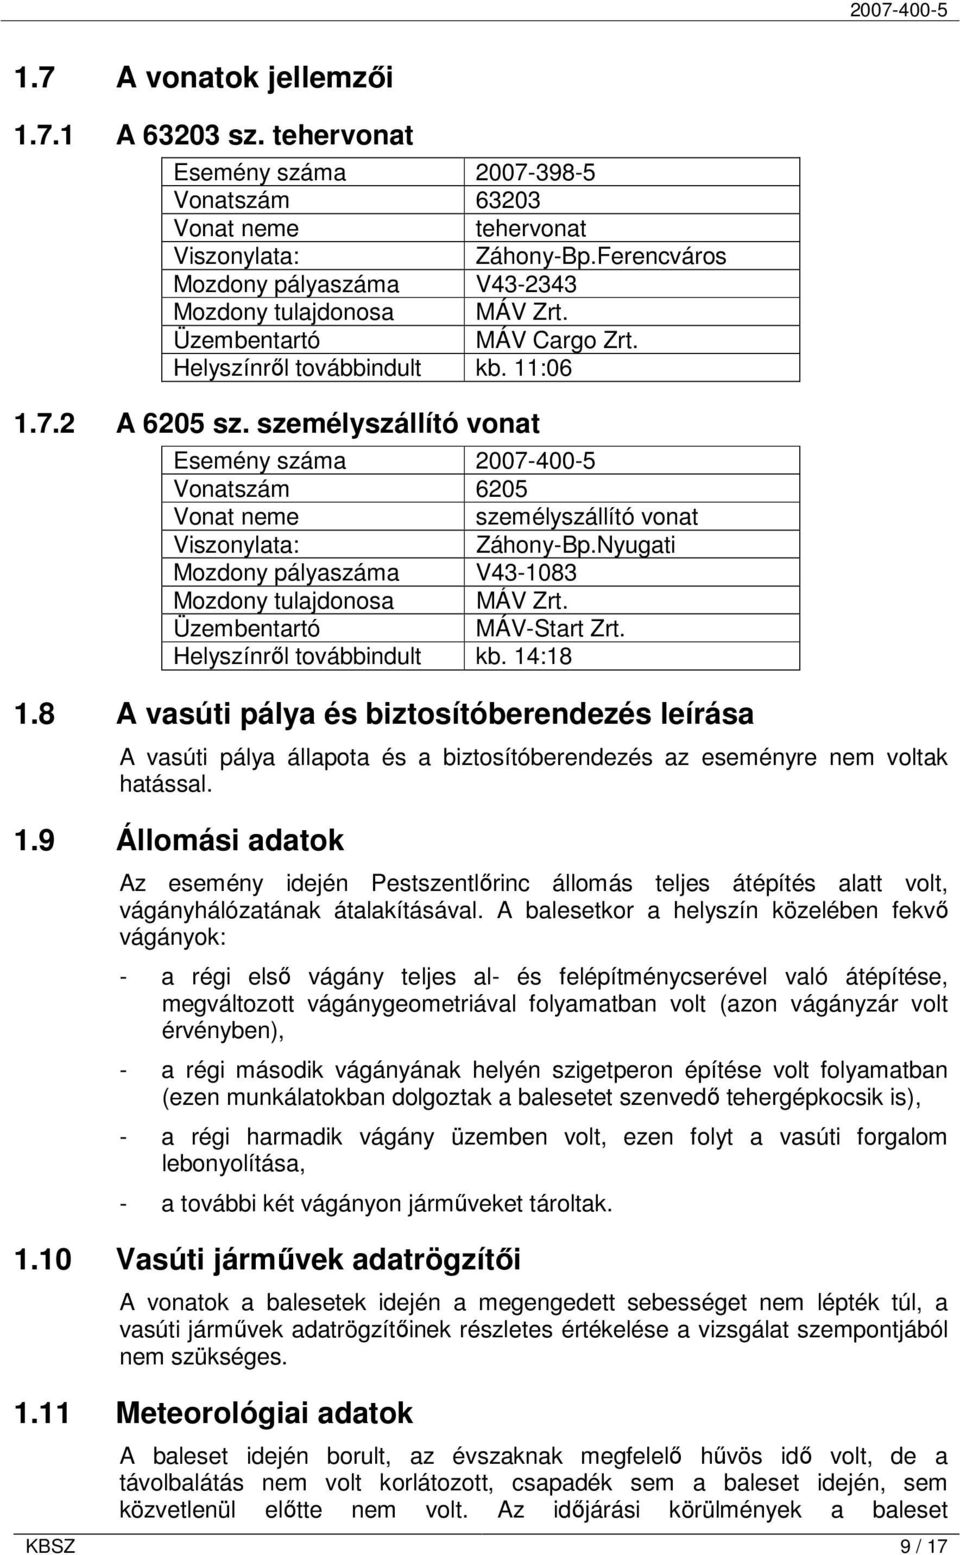 személyszállító vonat Esemény száma 2007-400-5 Vonatszám 6205 Vonat neme személyszállító vonat Viszonylata: Záhony-Bp.Nyugati Mozdony pályaszáma V43-1083 Mozdony tulajdonosa MÁV Zrt.